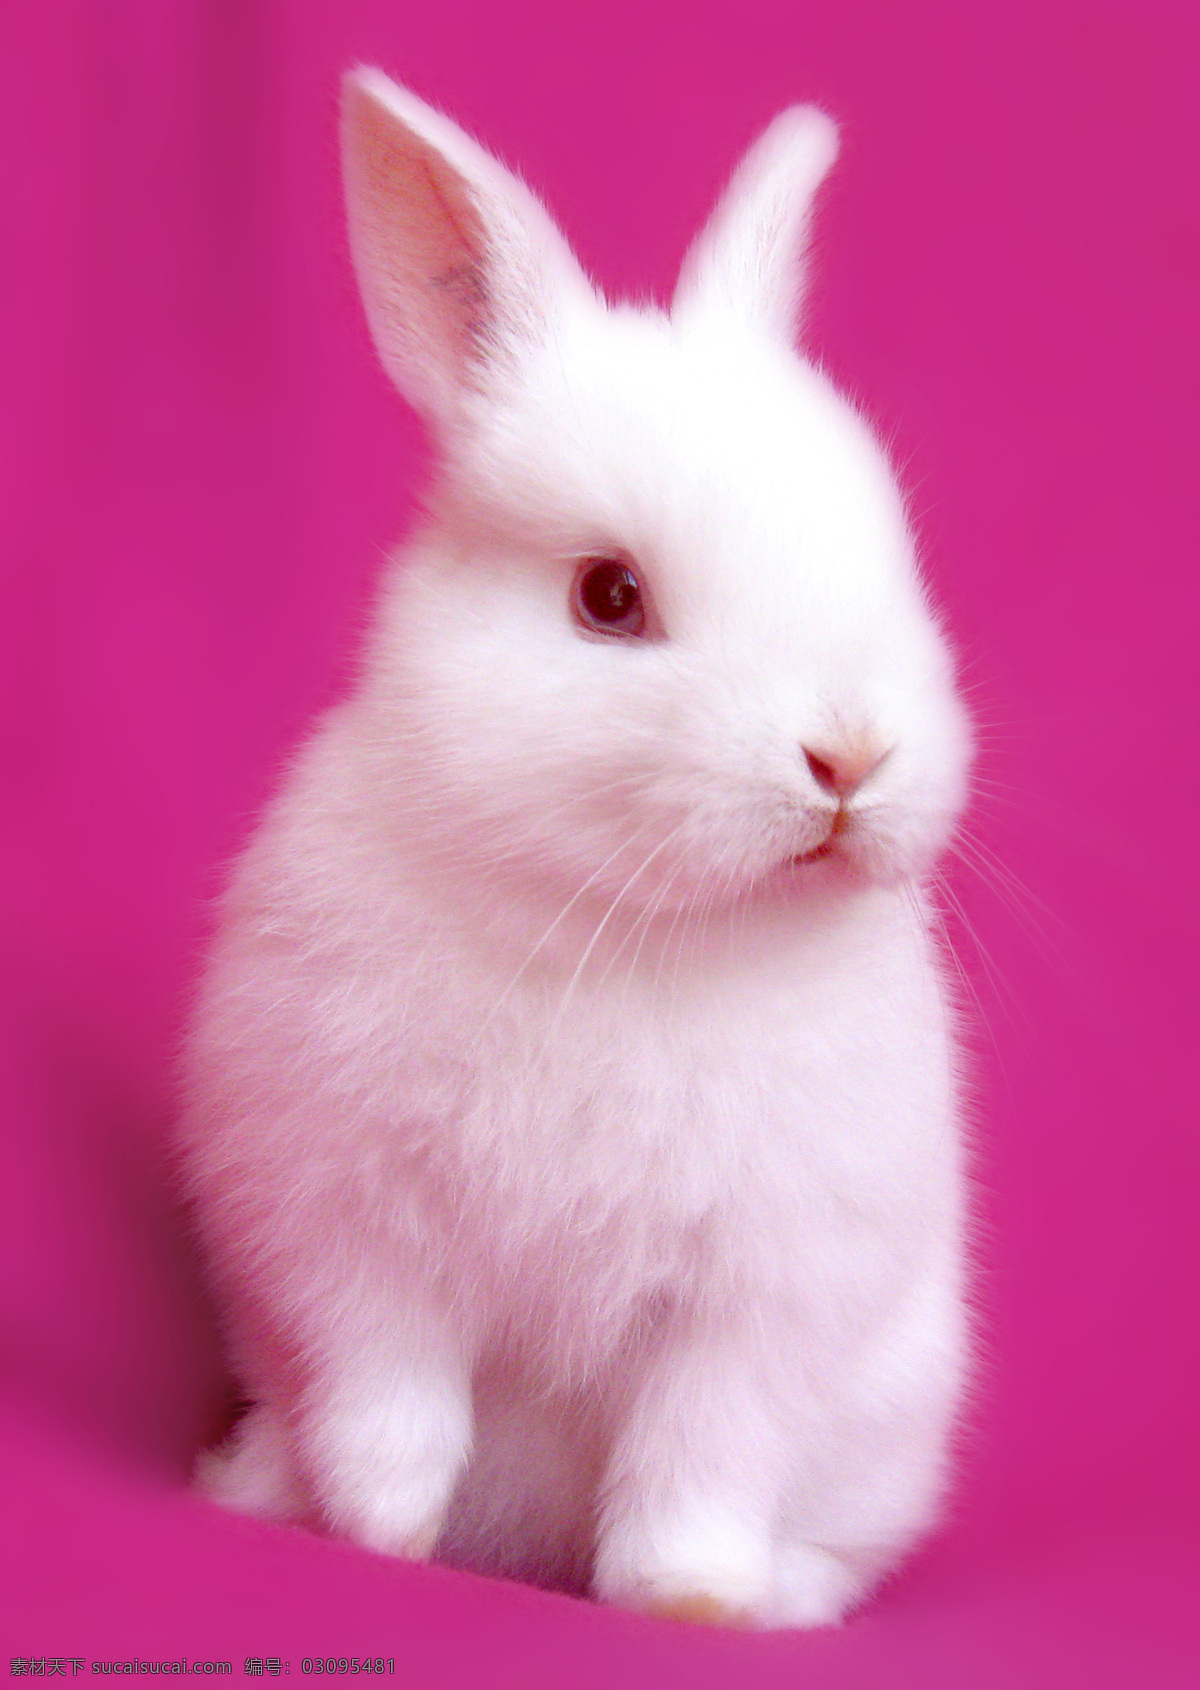 可爱小兔子 兔子 乖乖兔 小兔子 兔年素材 兔兔 可爱的兔子 白色兔子 漂亮的兔子 可爱 宠物 红眼静 兔年生肖素材 家禽家畜 动物 兔子图片 生物 生物世界 野生动物 动物摄影